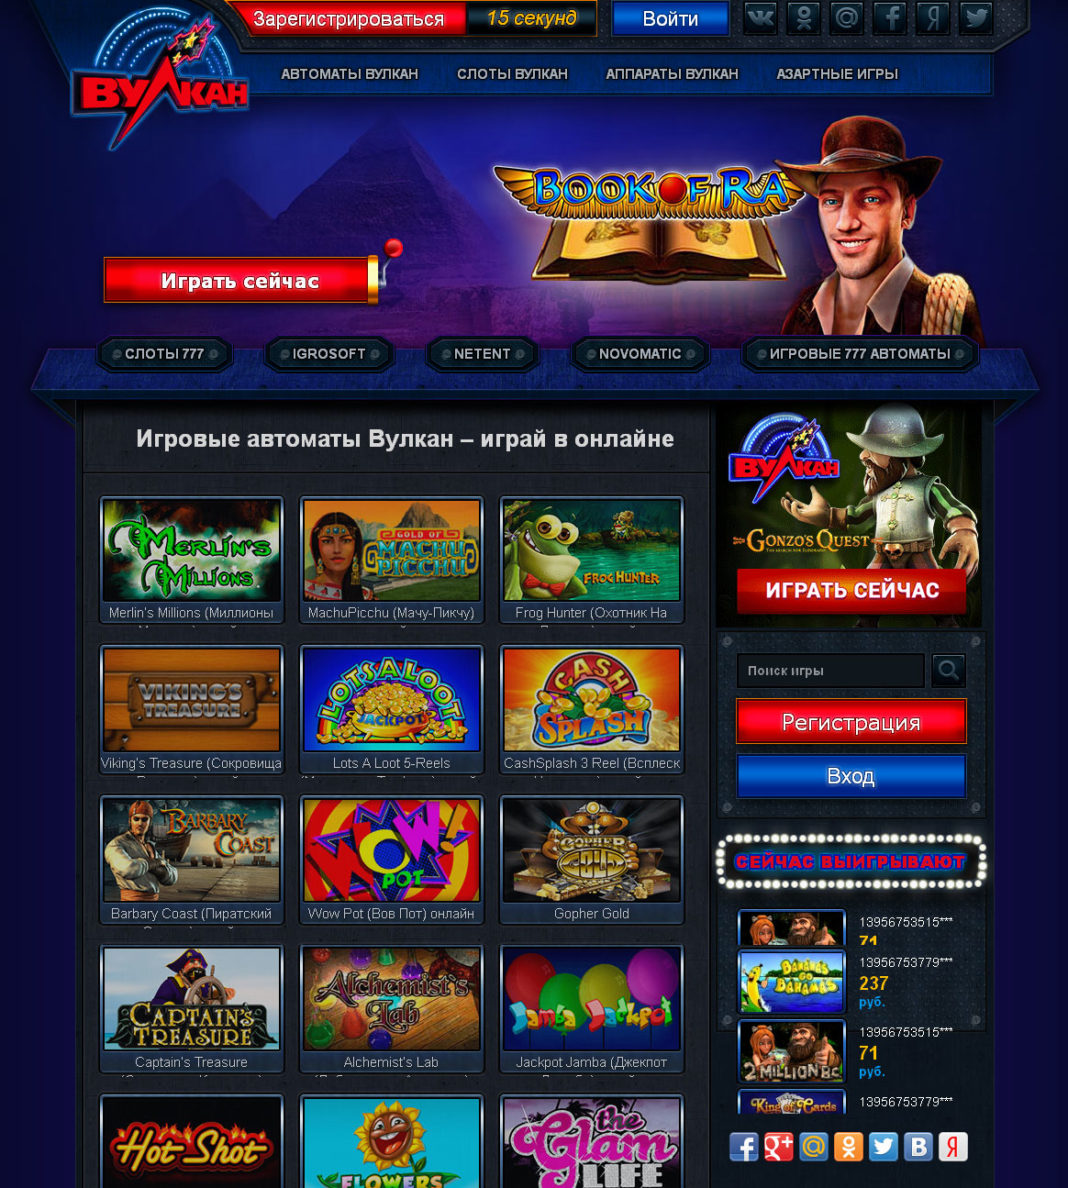 Клуб вулкан игровые автоматы официальный сайт вулкан платинум официальный сайт игровых автоматов на деньги россия